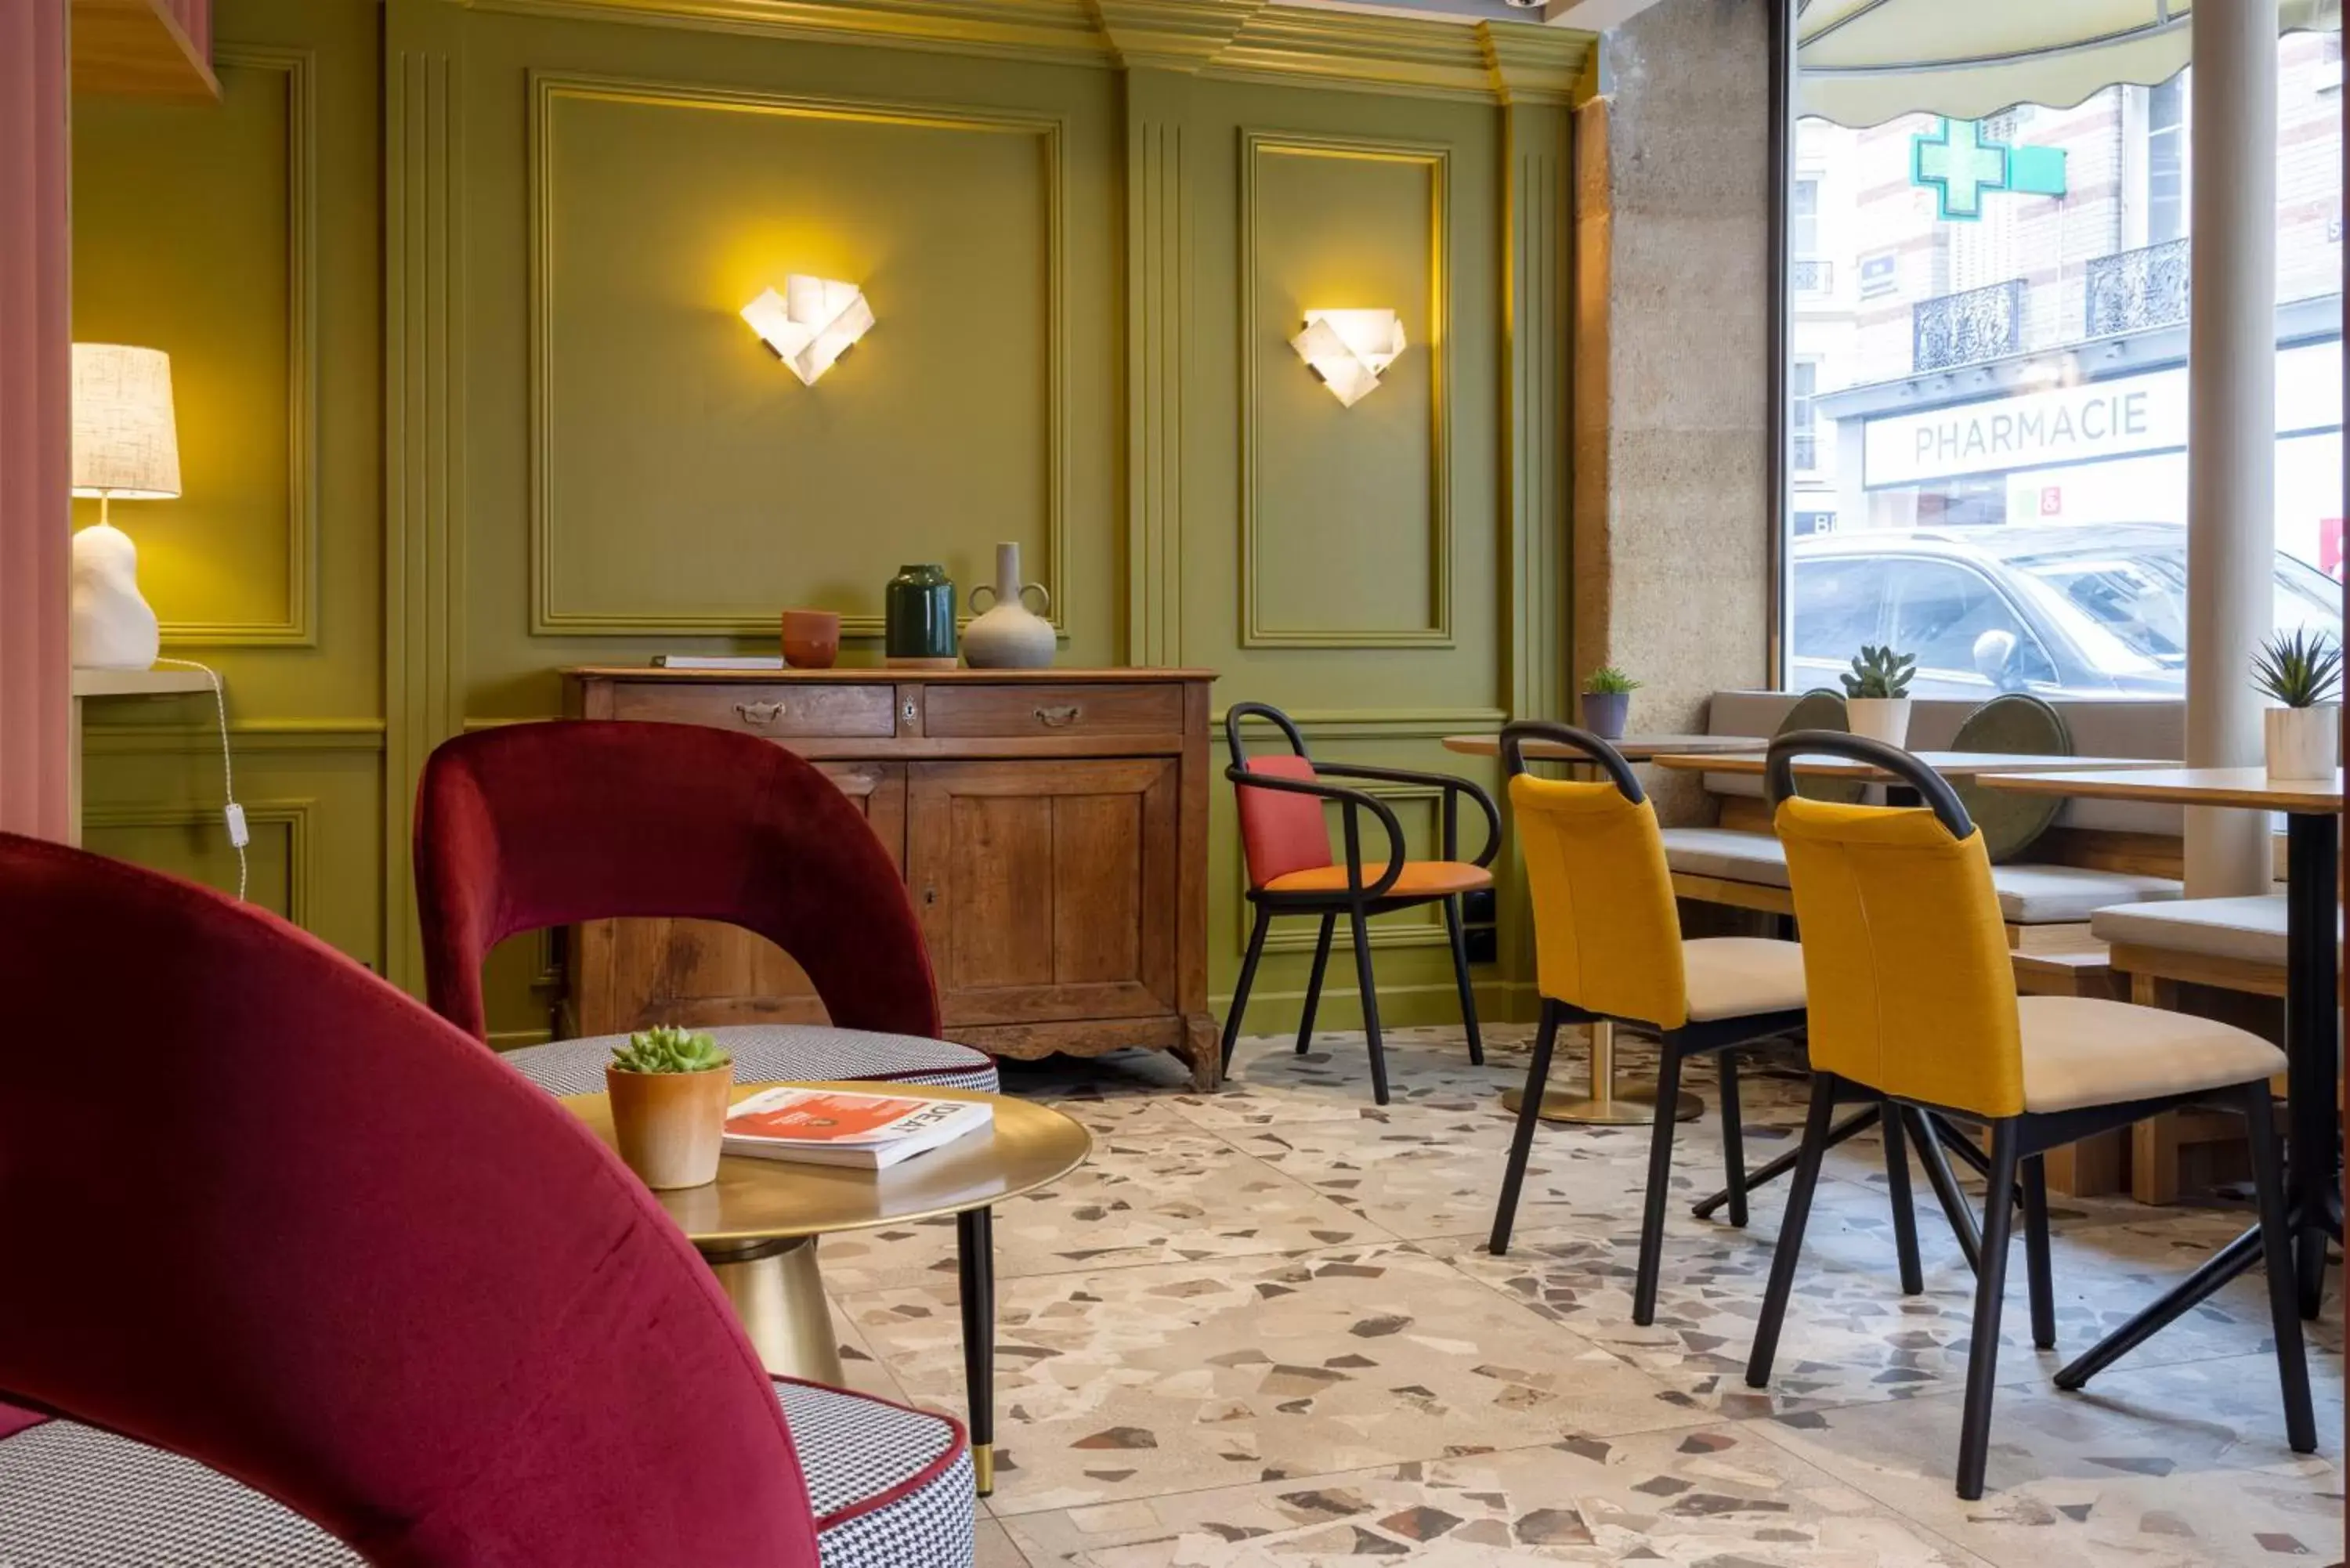 Lobby or reception, Restaurant/Places to Eat in Hôtel De La Paix